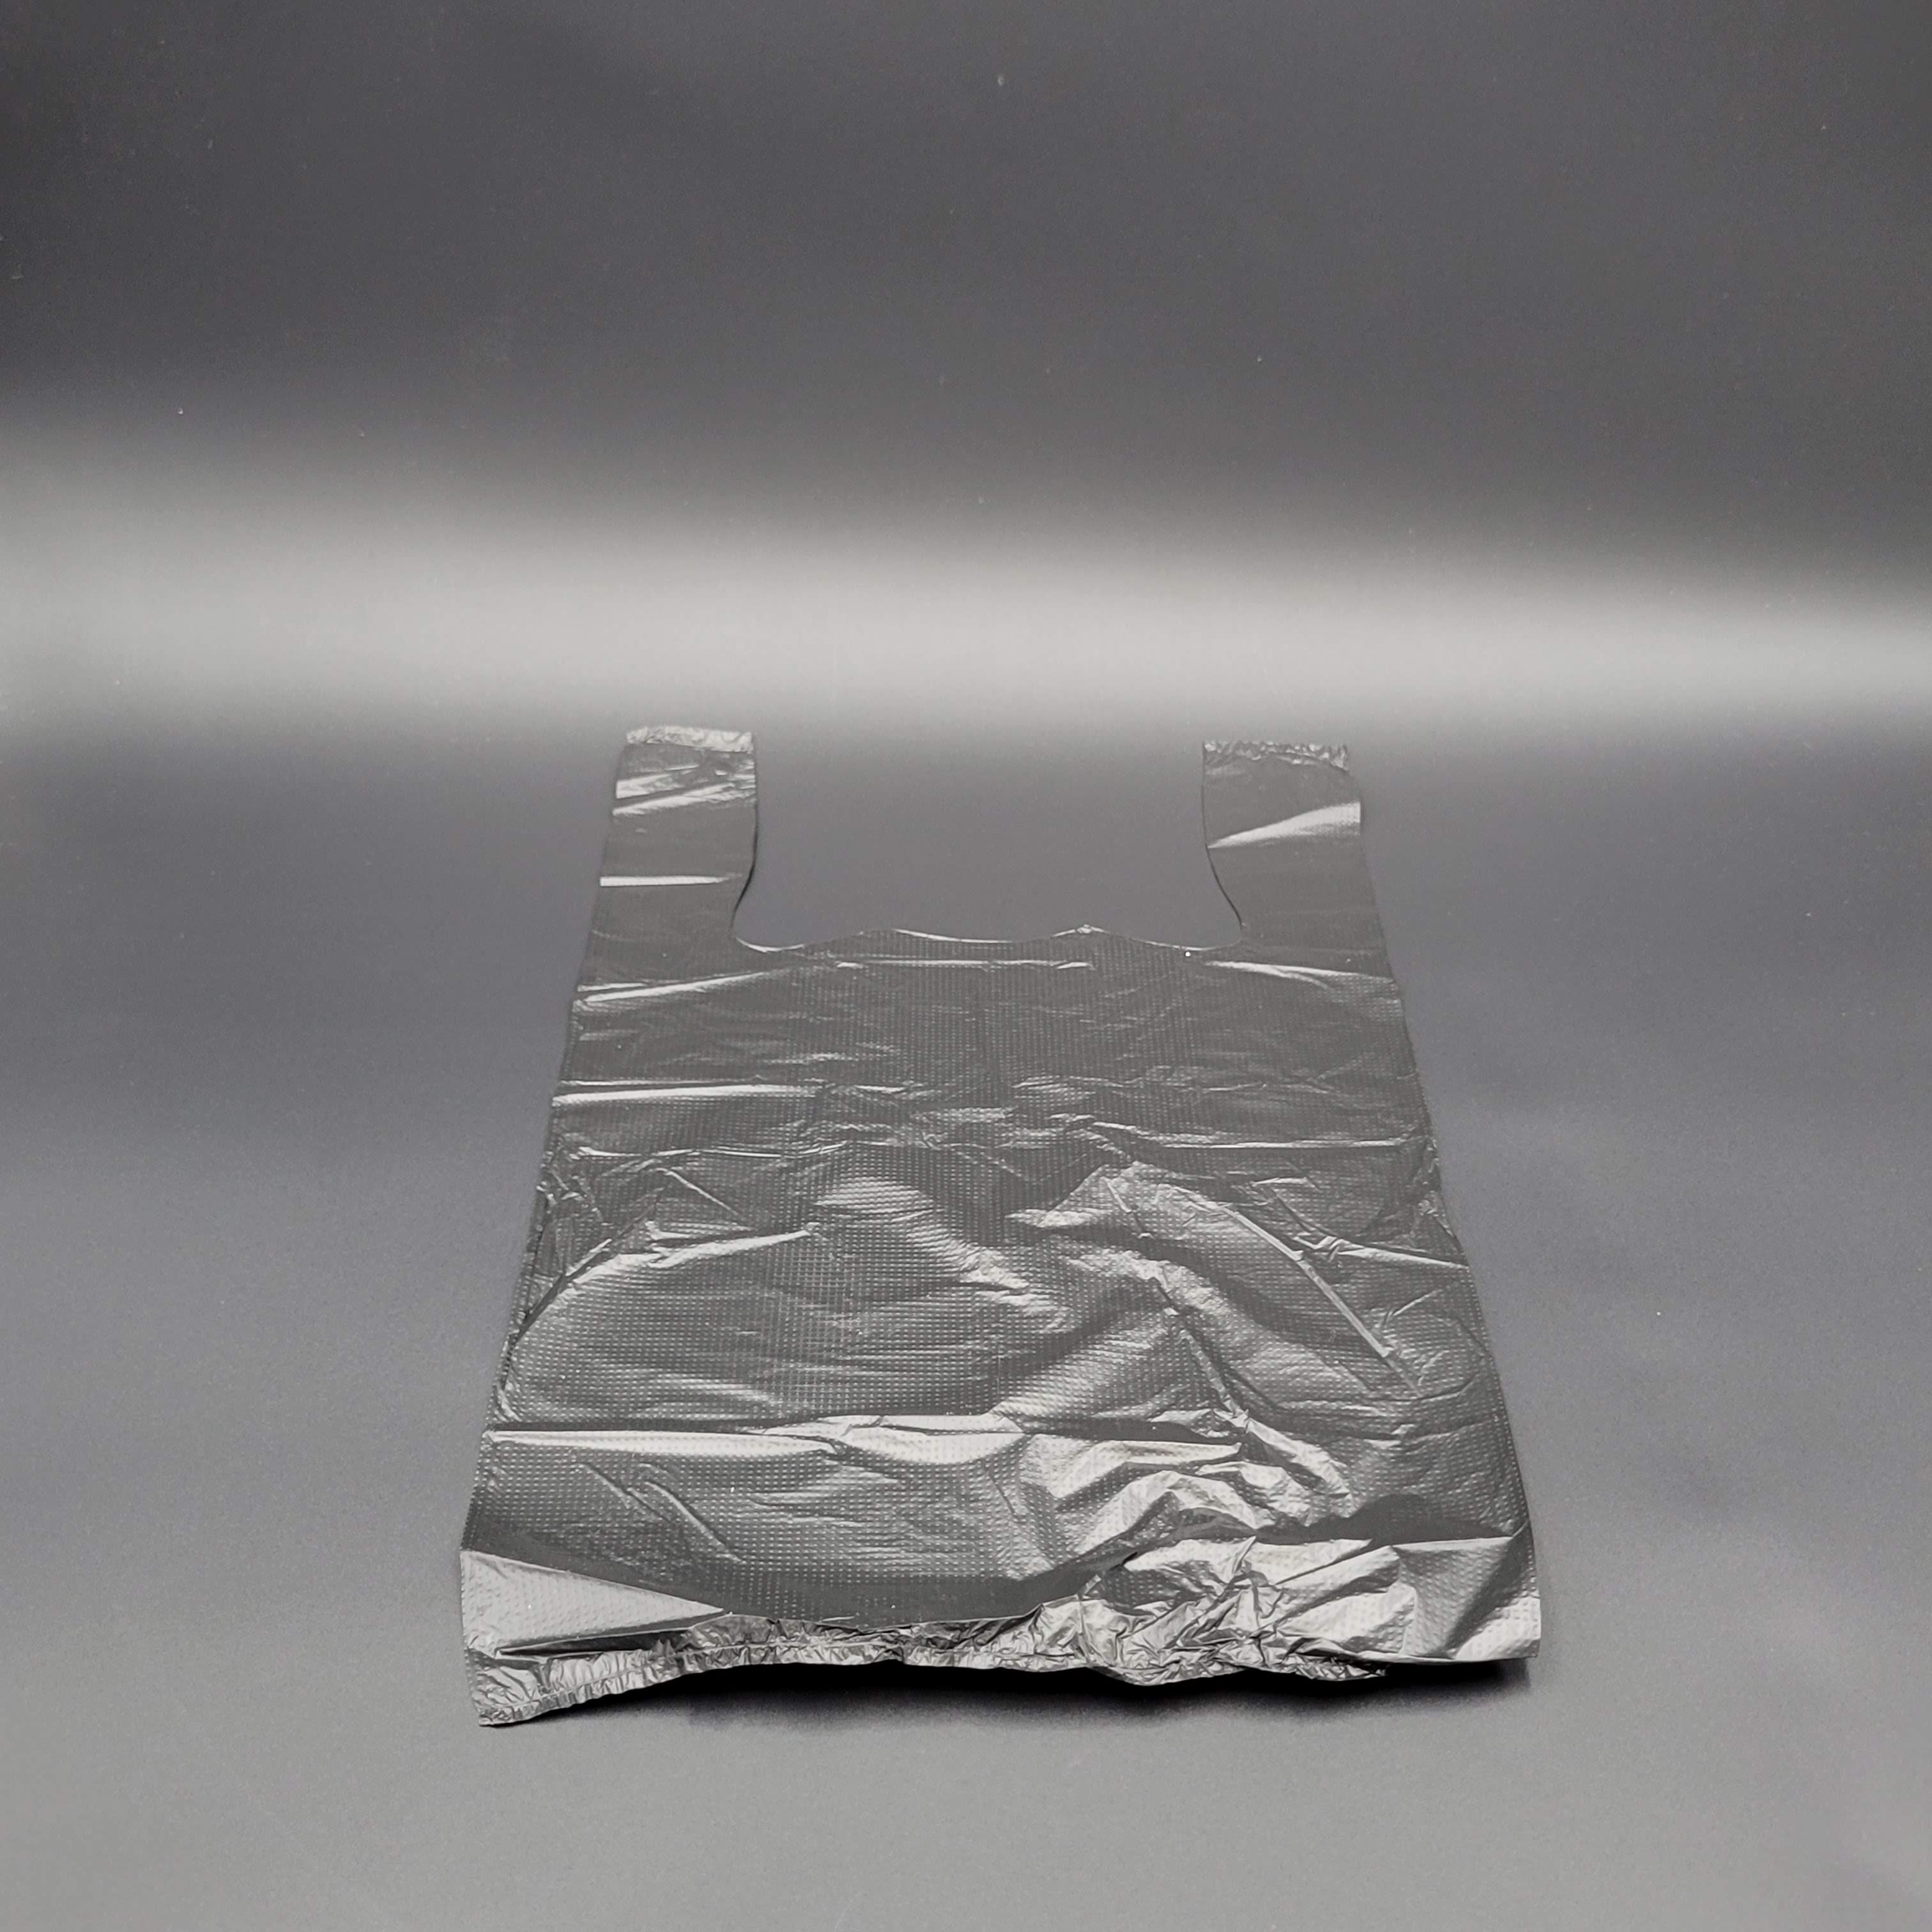 Self Open Black Plain T-Shirt Plastic Bag 1/10 Size - 1500/Case